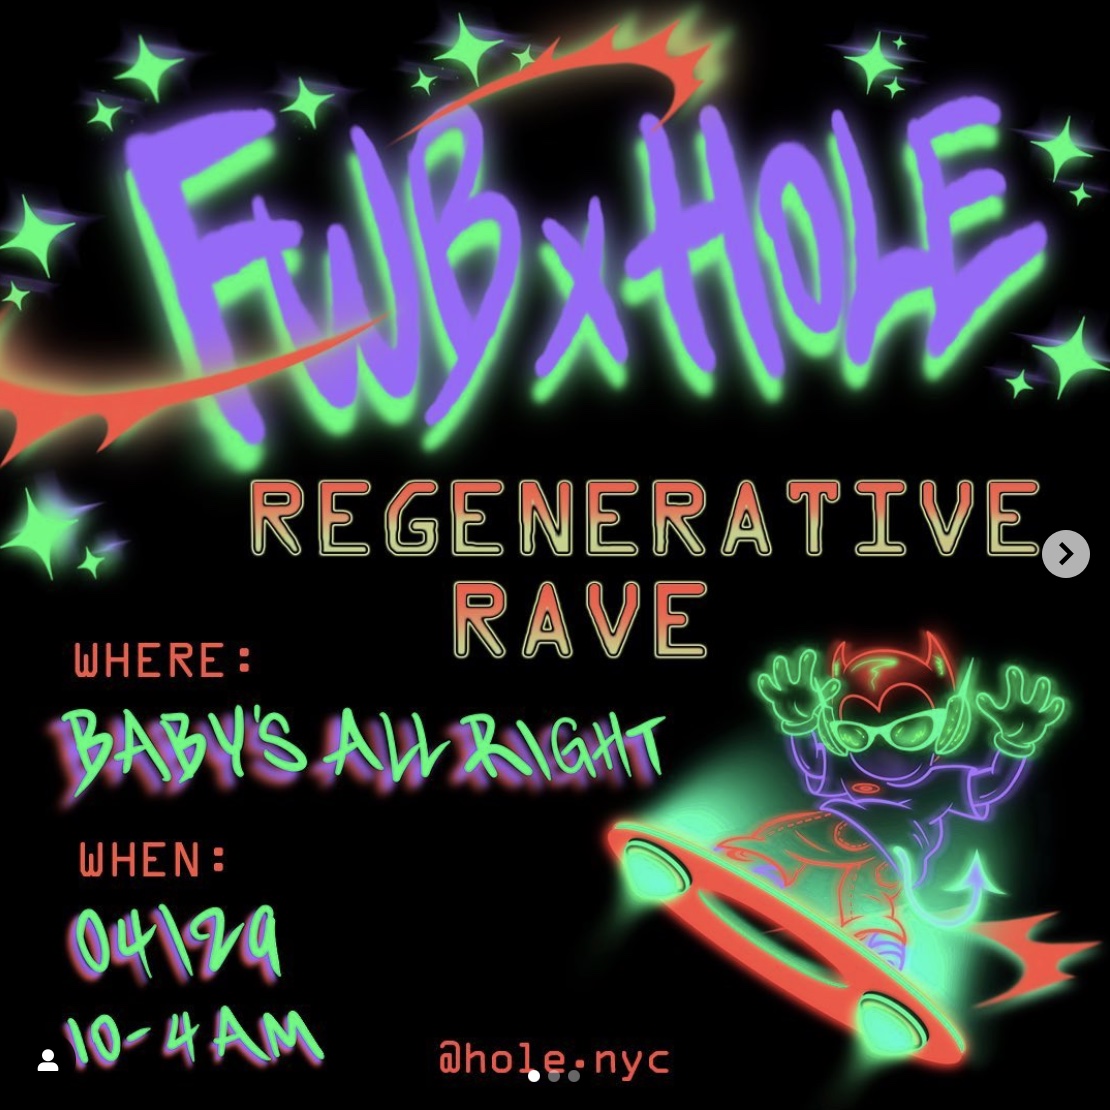 Hole Rave